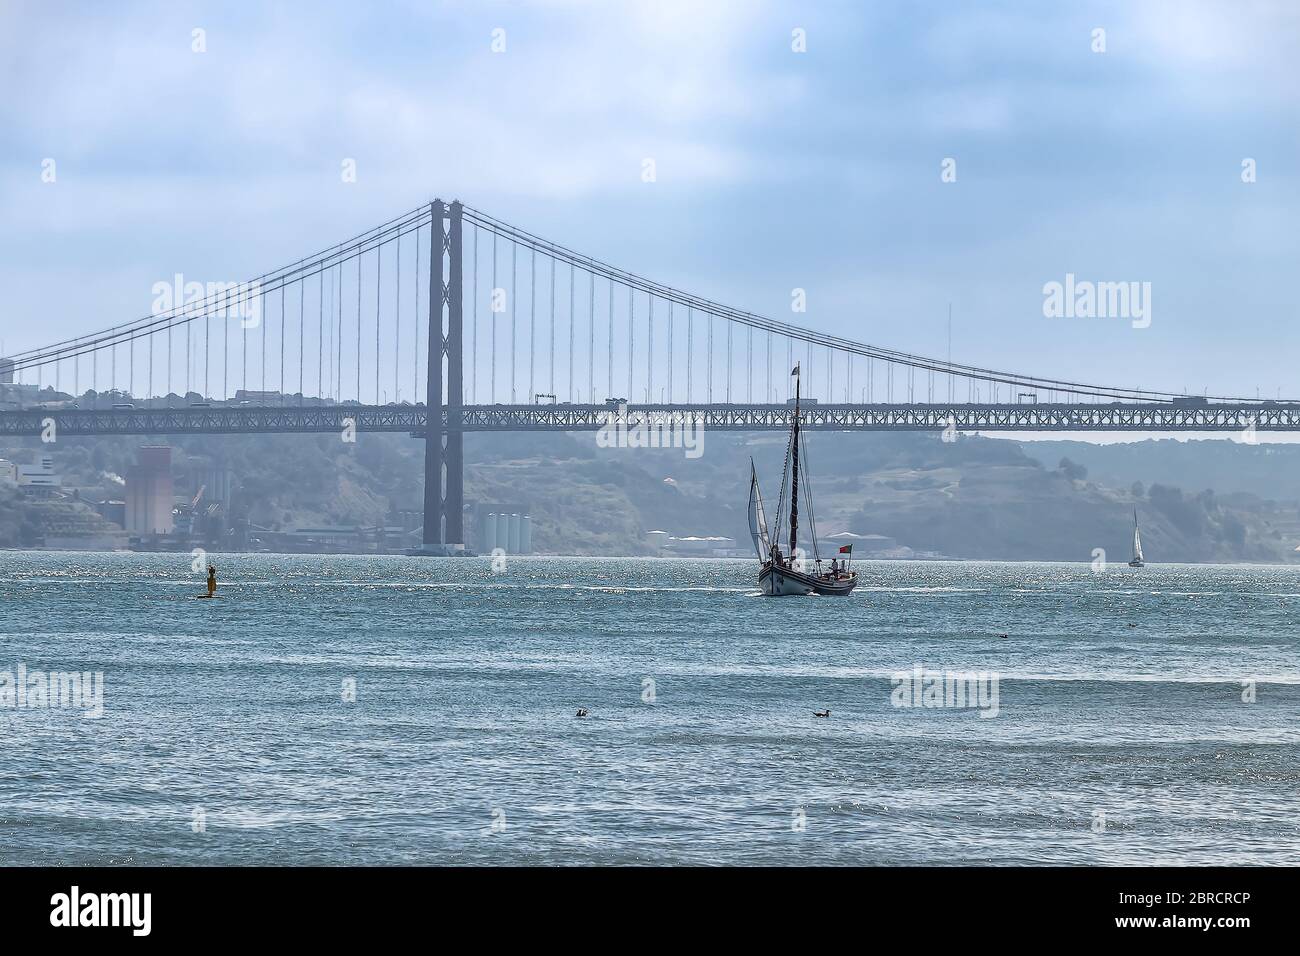 Barca a vela con ponte 25 aprile sullo sfondo con un po' di nebbia Foto Stock